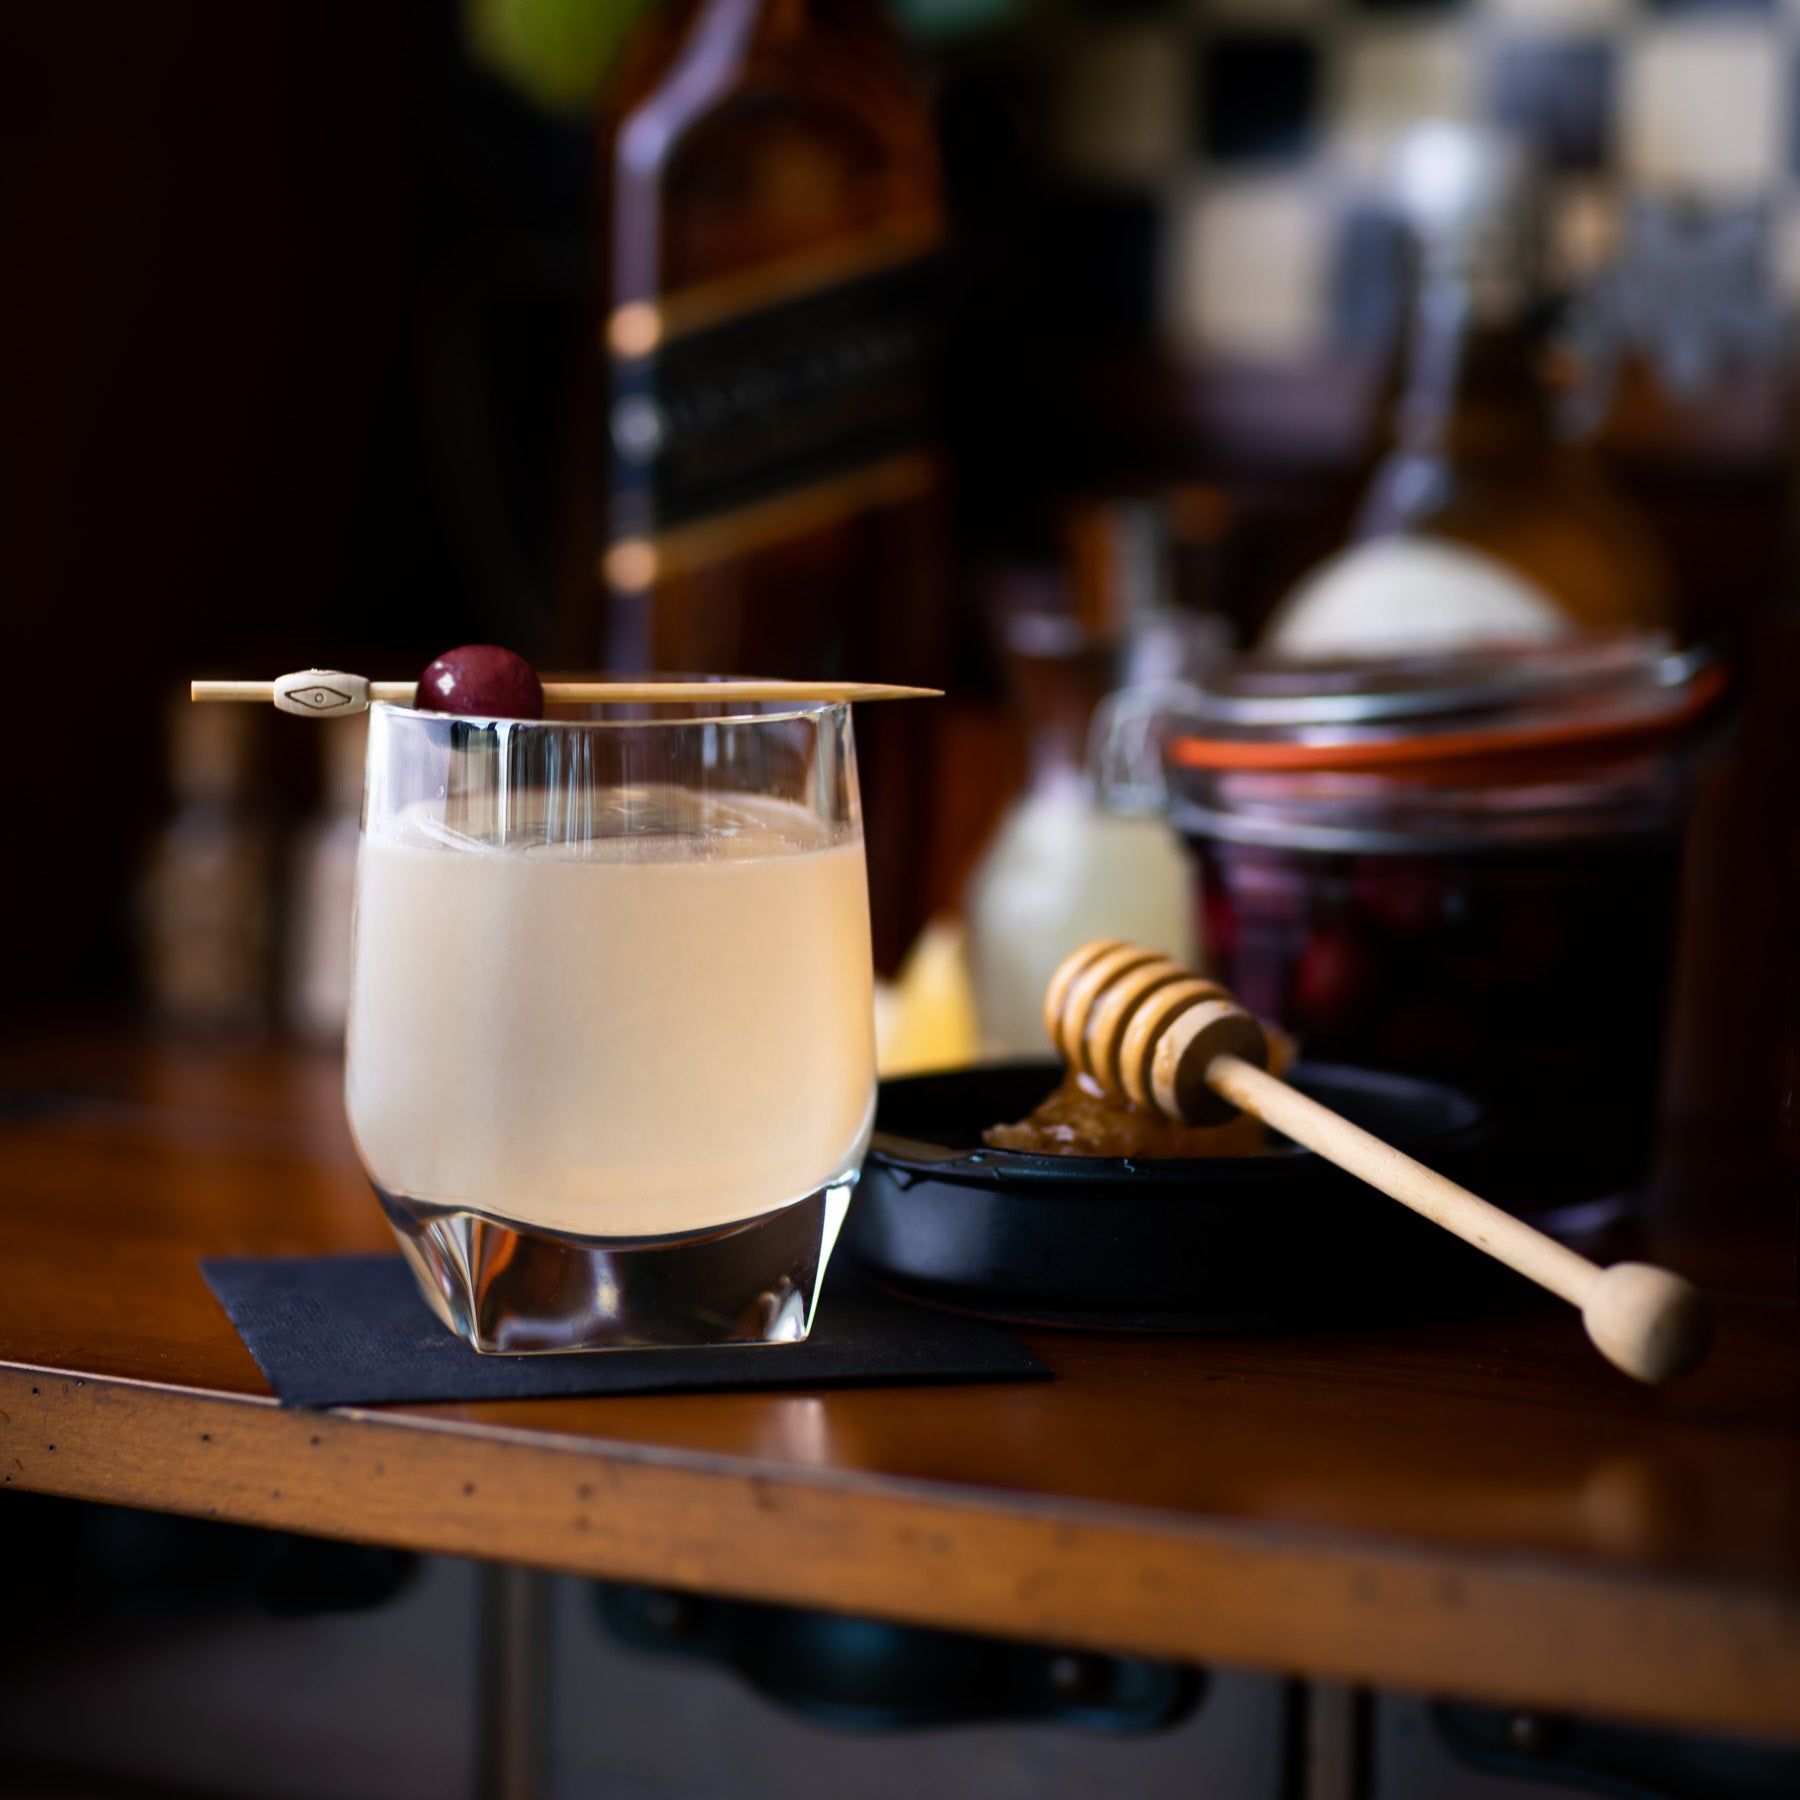 Whisky Sour + Bar Equipment Cocktail Kit